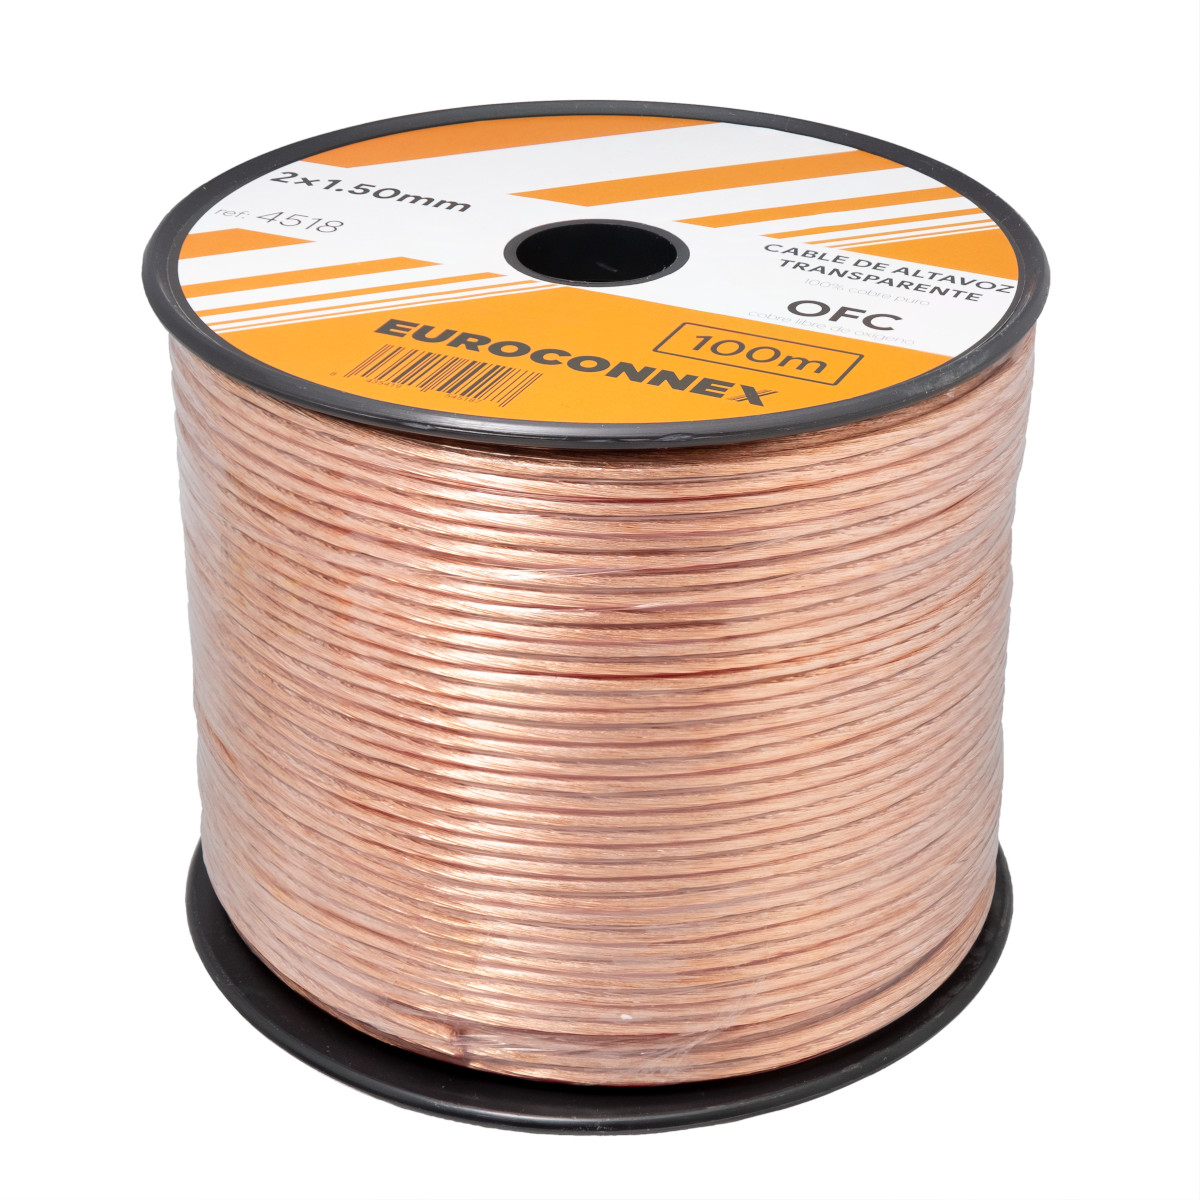 Cable de Altavoz Paralelo Transparente 2x1.50mm² 100m - OFC